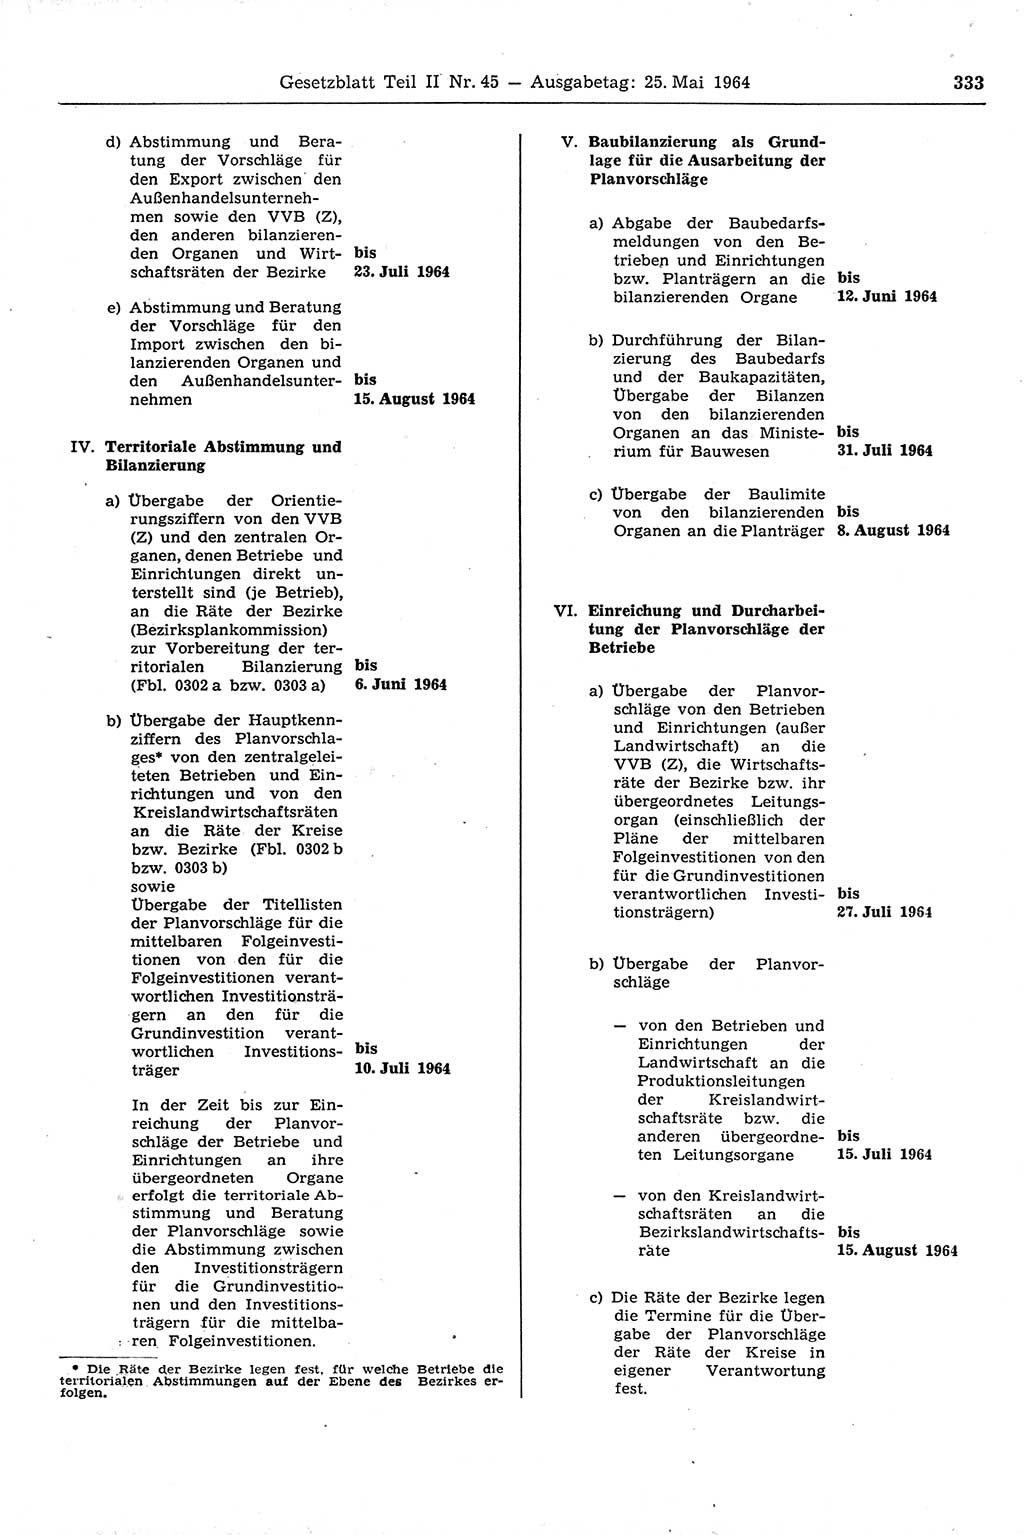 Gesetzblatt (GBl.) der Deutschen Demokratischen Republik (DDR) Teil ⅠⅠ 1964, Seite 333 (GBl. DDR ⅠⅠ 1964, S. 333)